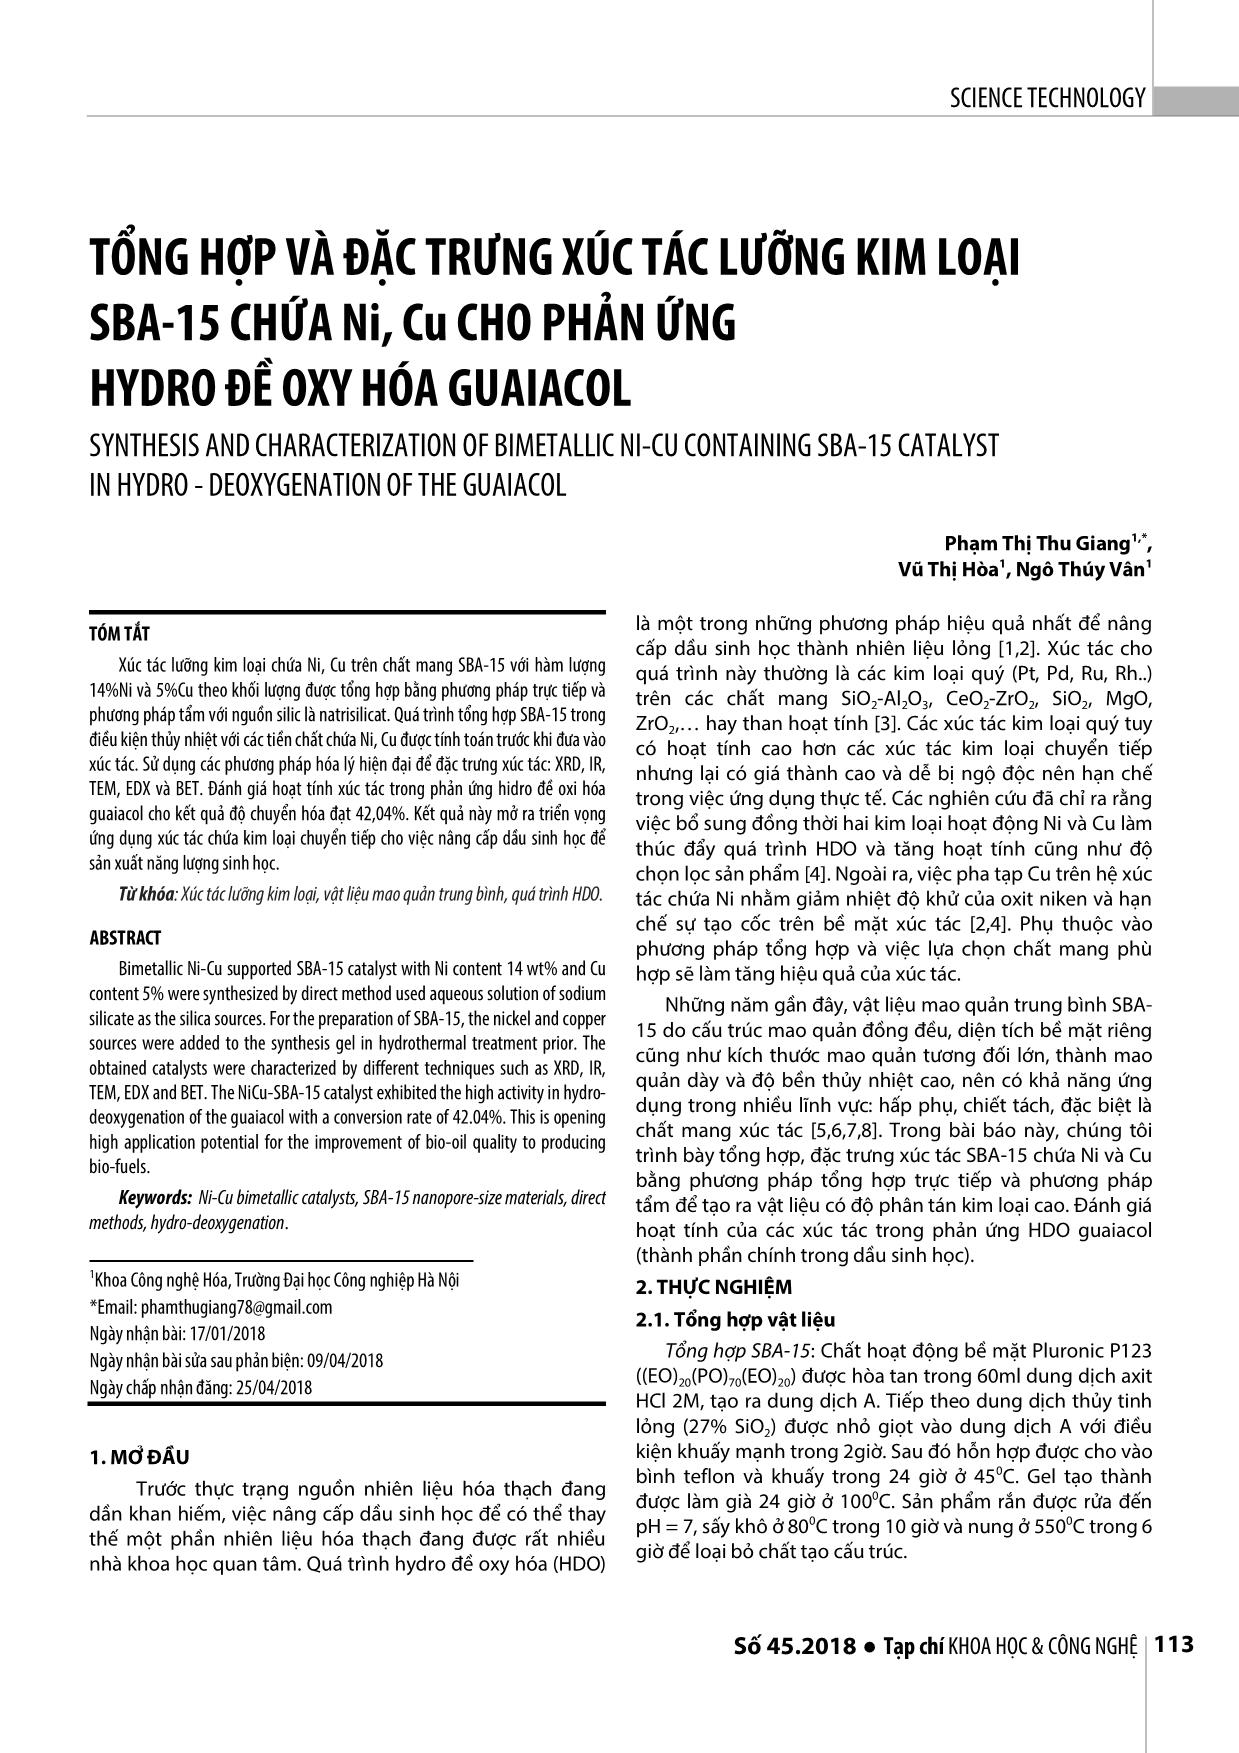 Tổng hợp và đặc trưng xúc tác lưỡng kim loại SBA-15 chứa Ni, Cu cho phản ứng hydro đề oxy hóa guaiacol trang 1